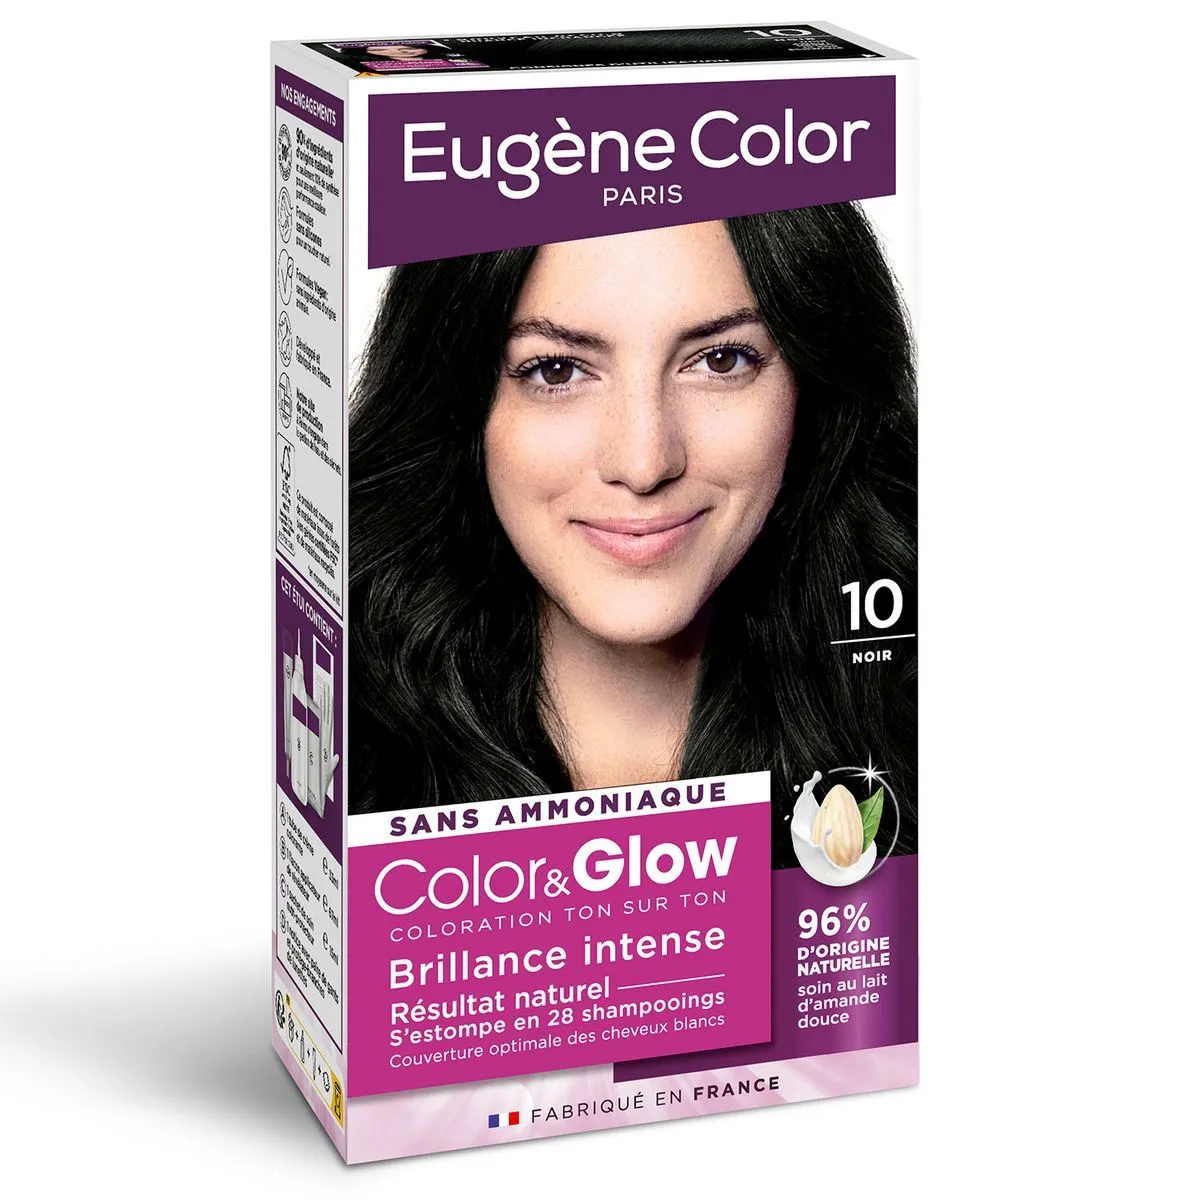 coloration color & glow eugene color noir